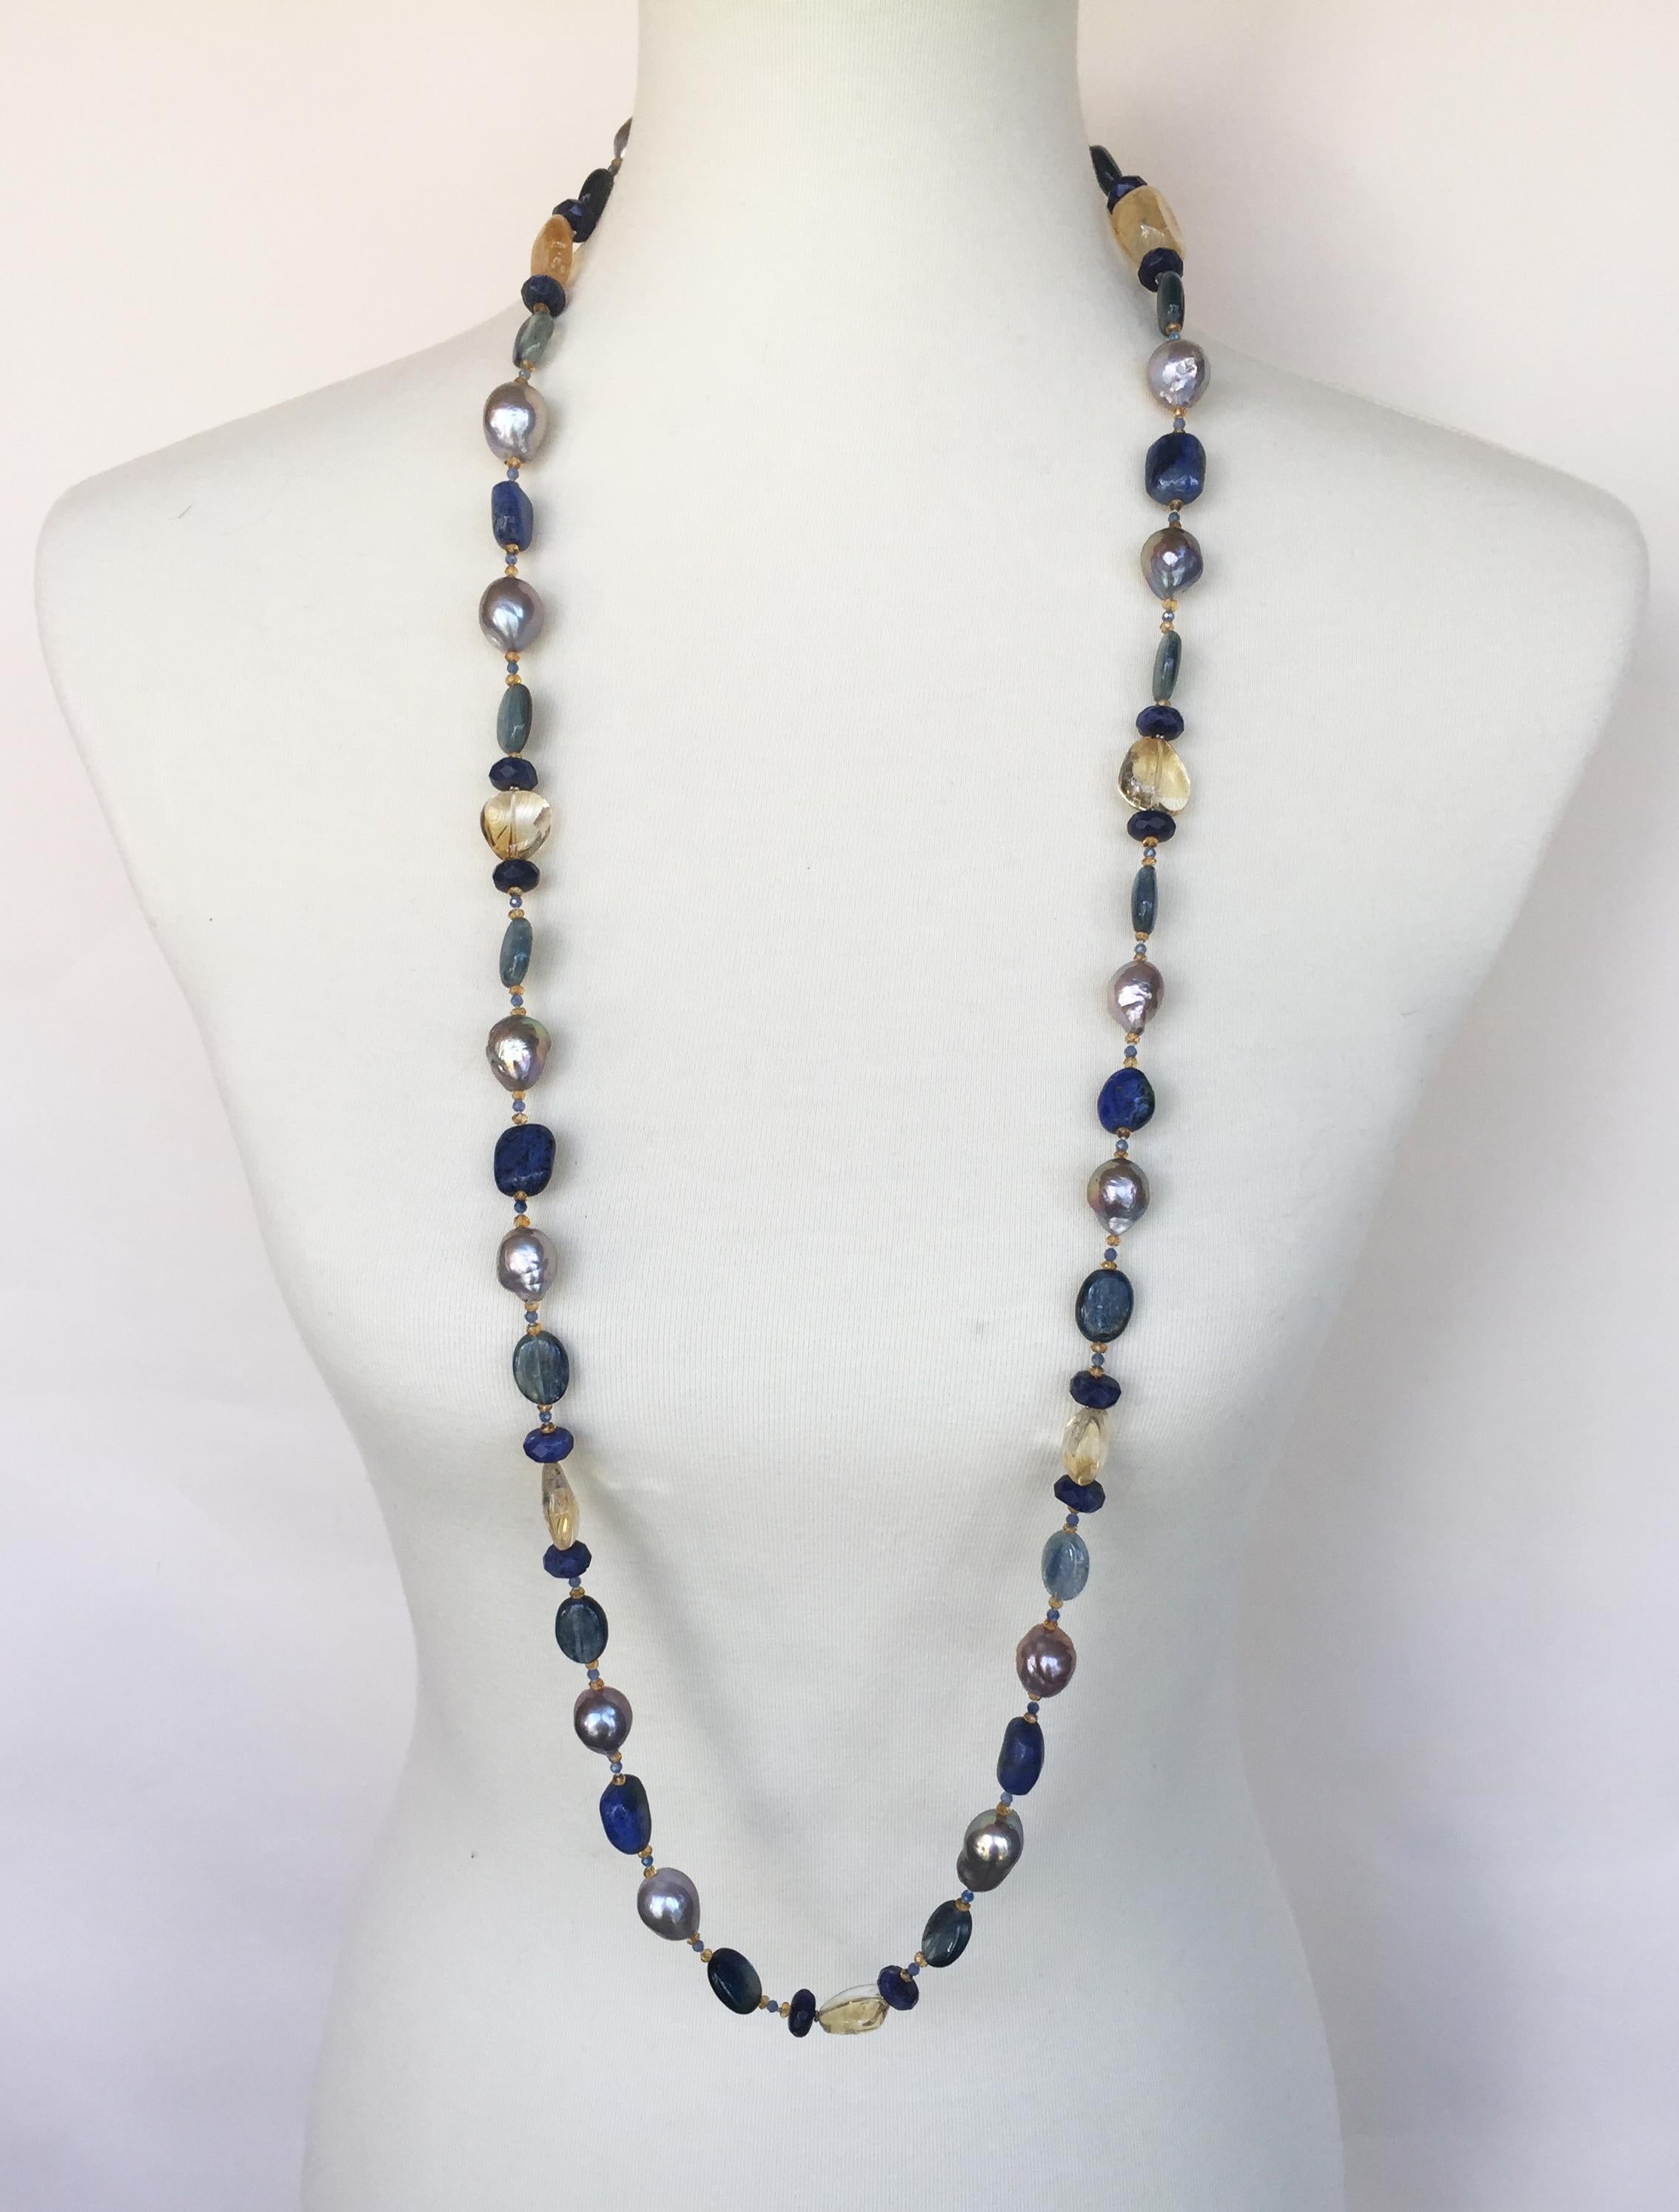 Marina J. Grey Pearl and Semiprecious Stones Sautoir Necklace with 14 Karat Gold 4